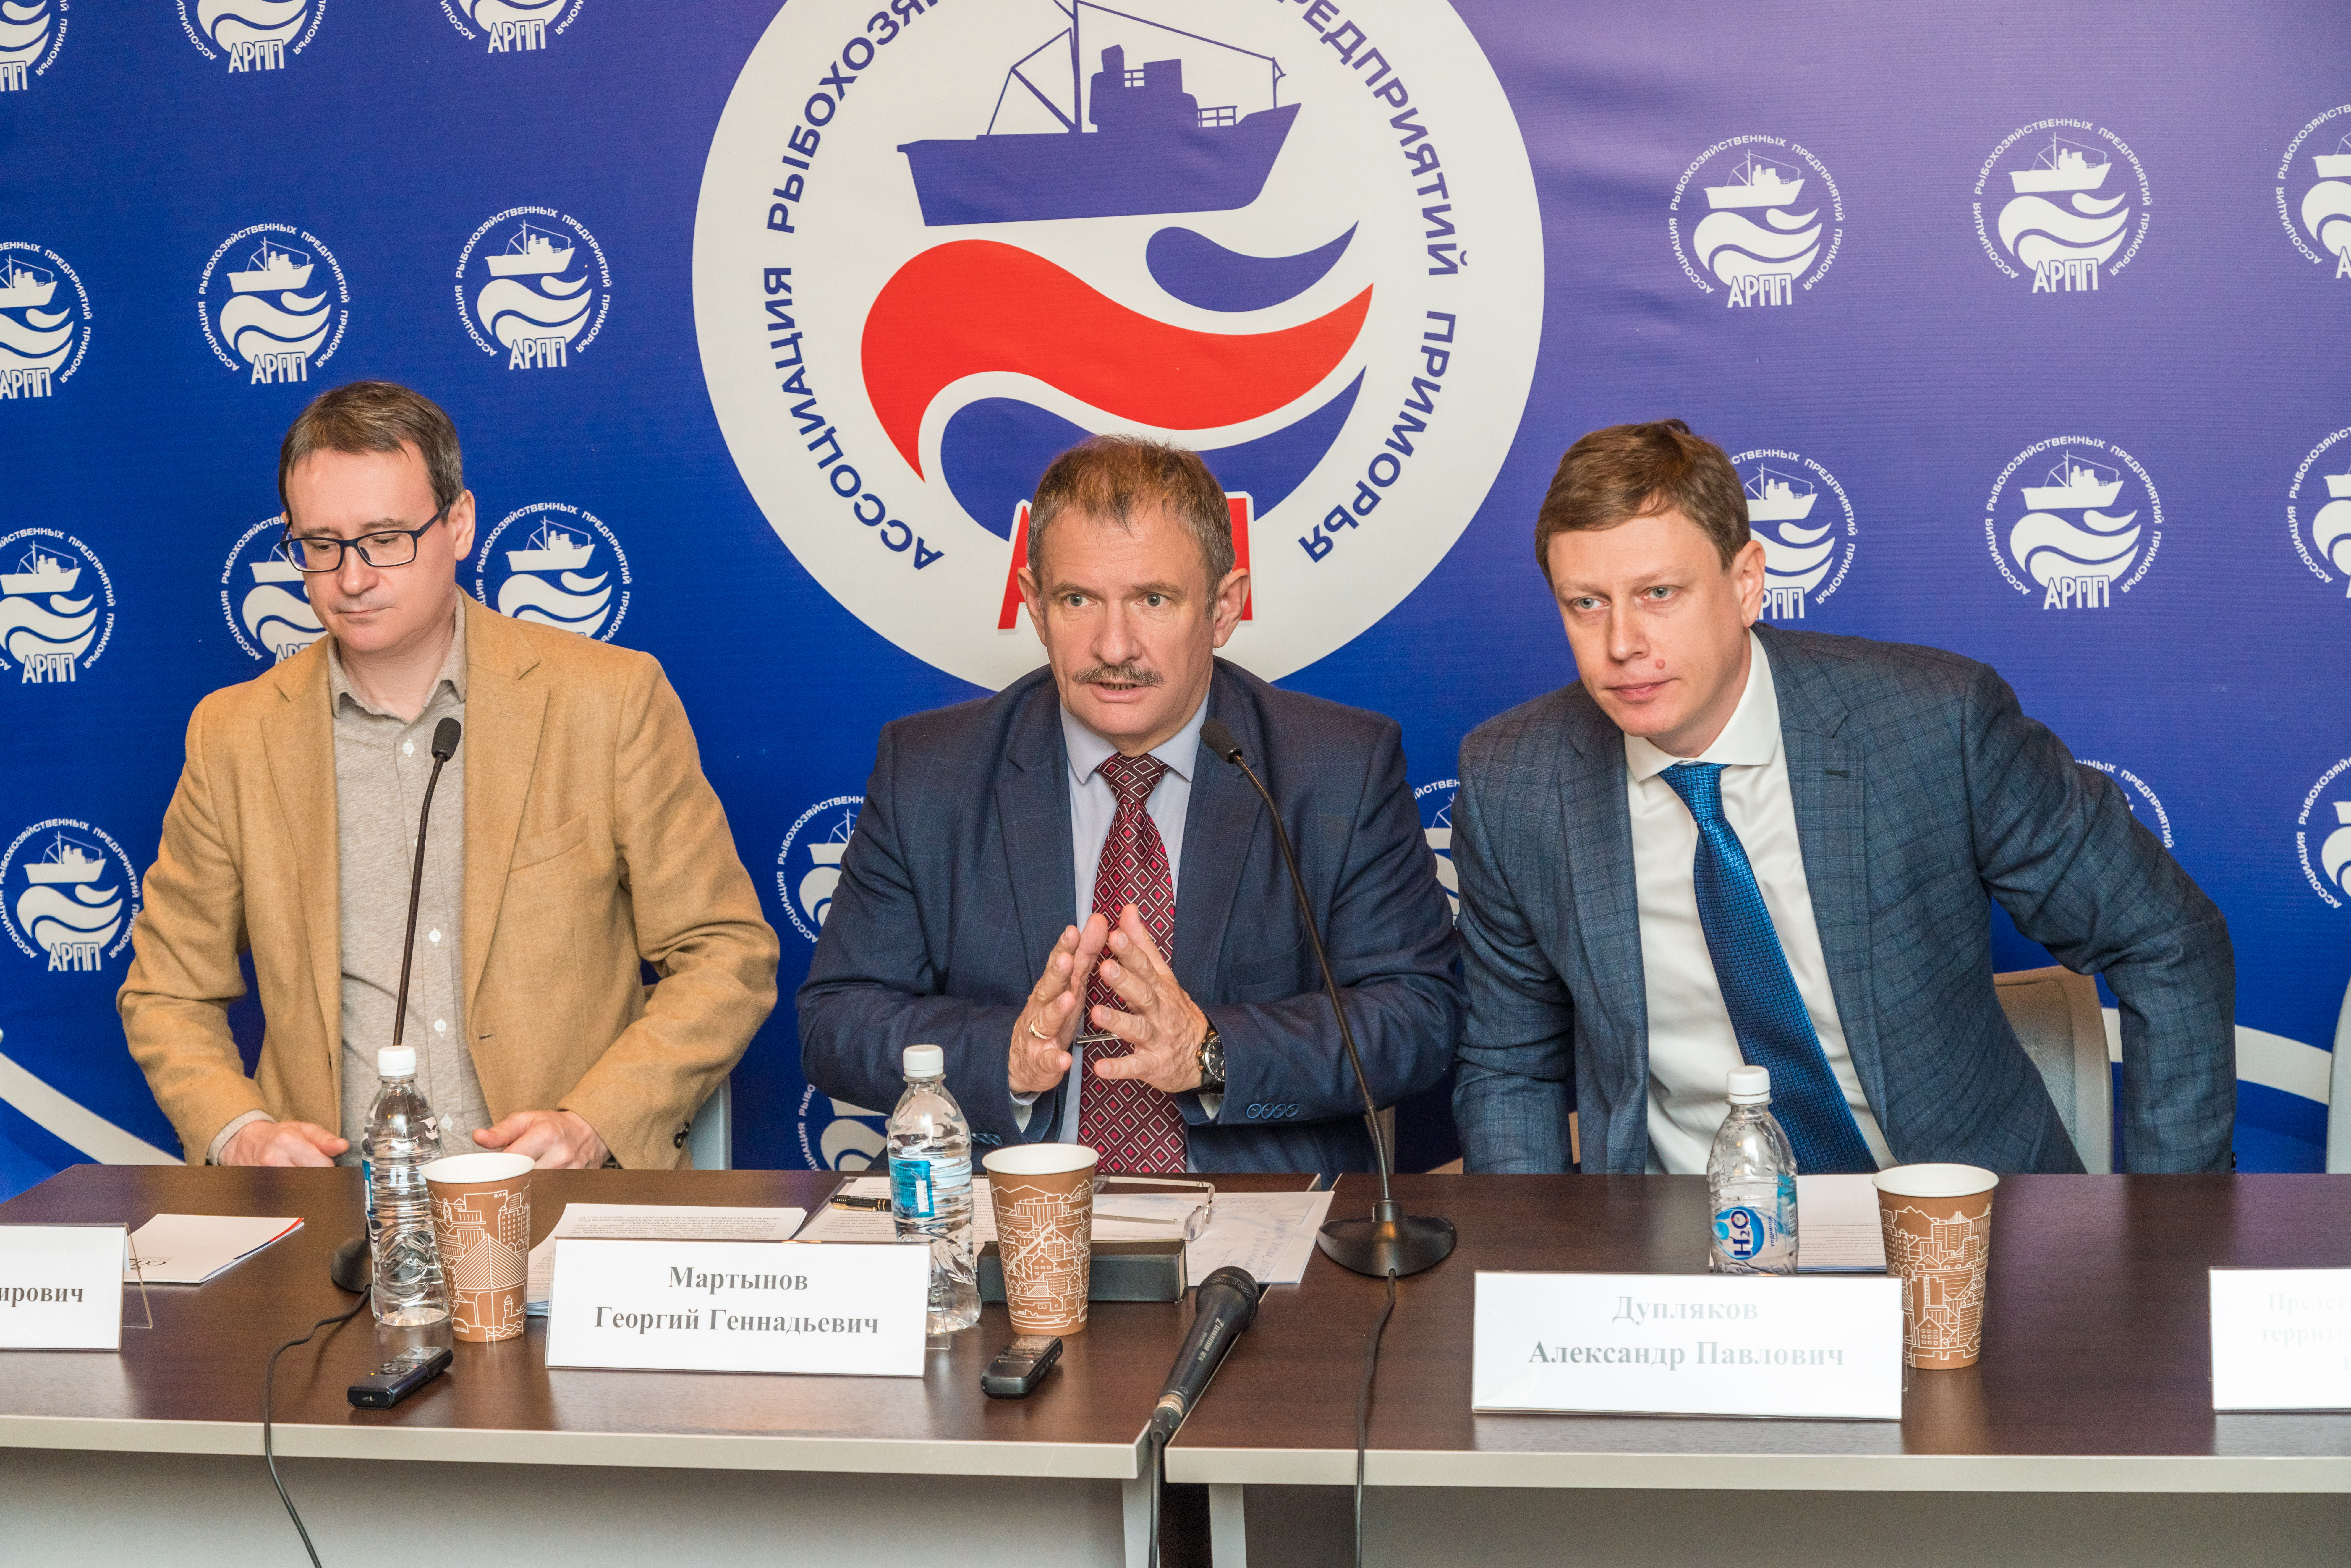 Пресс-конференция АРПП 24 января 2019 года (Владивосток) Люсине Игнатова